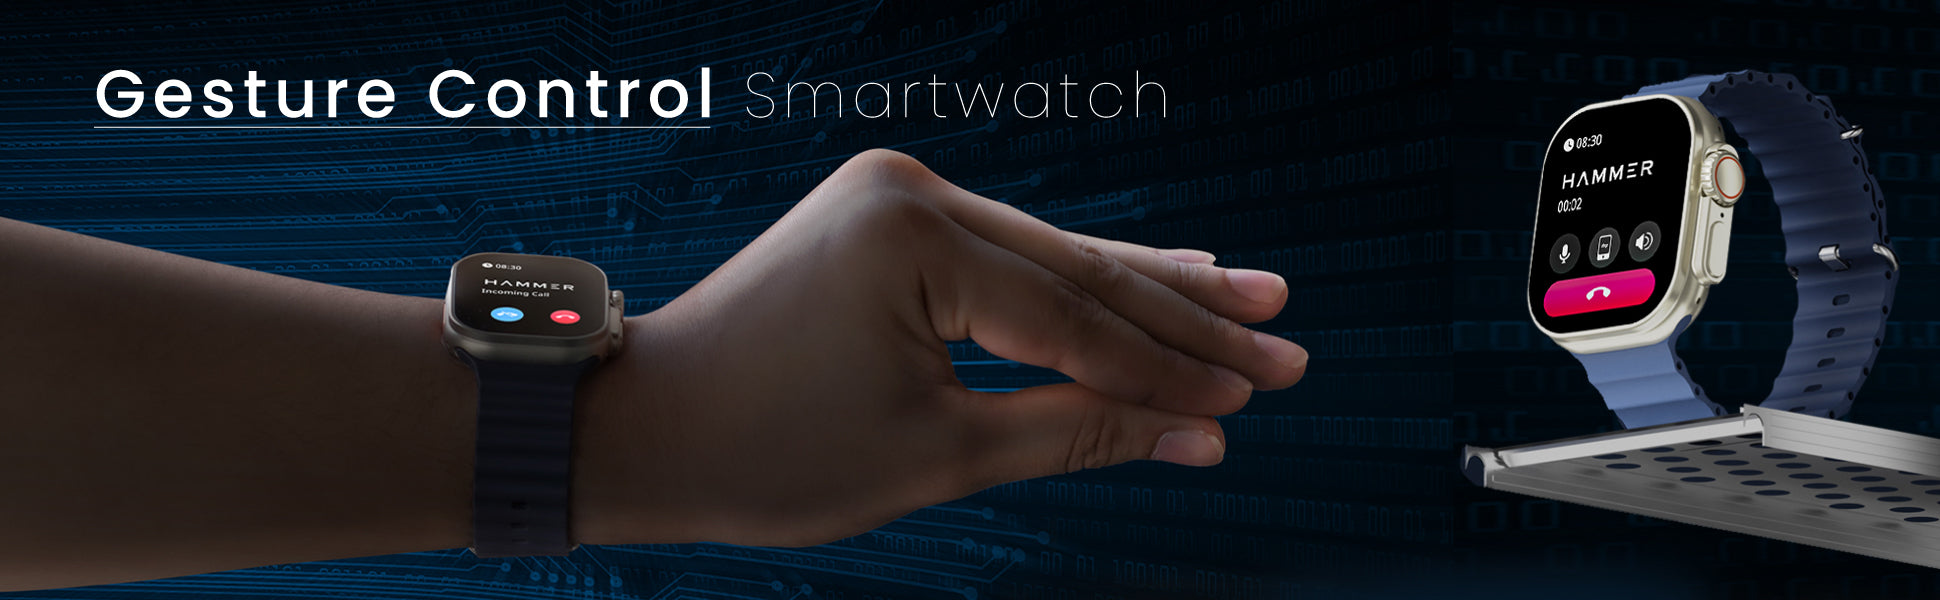 Hammer Gesture Control Smartwatch